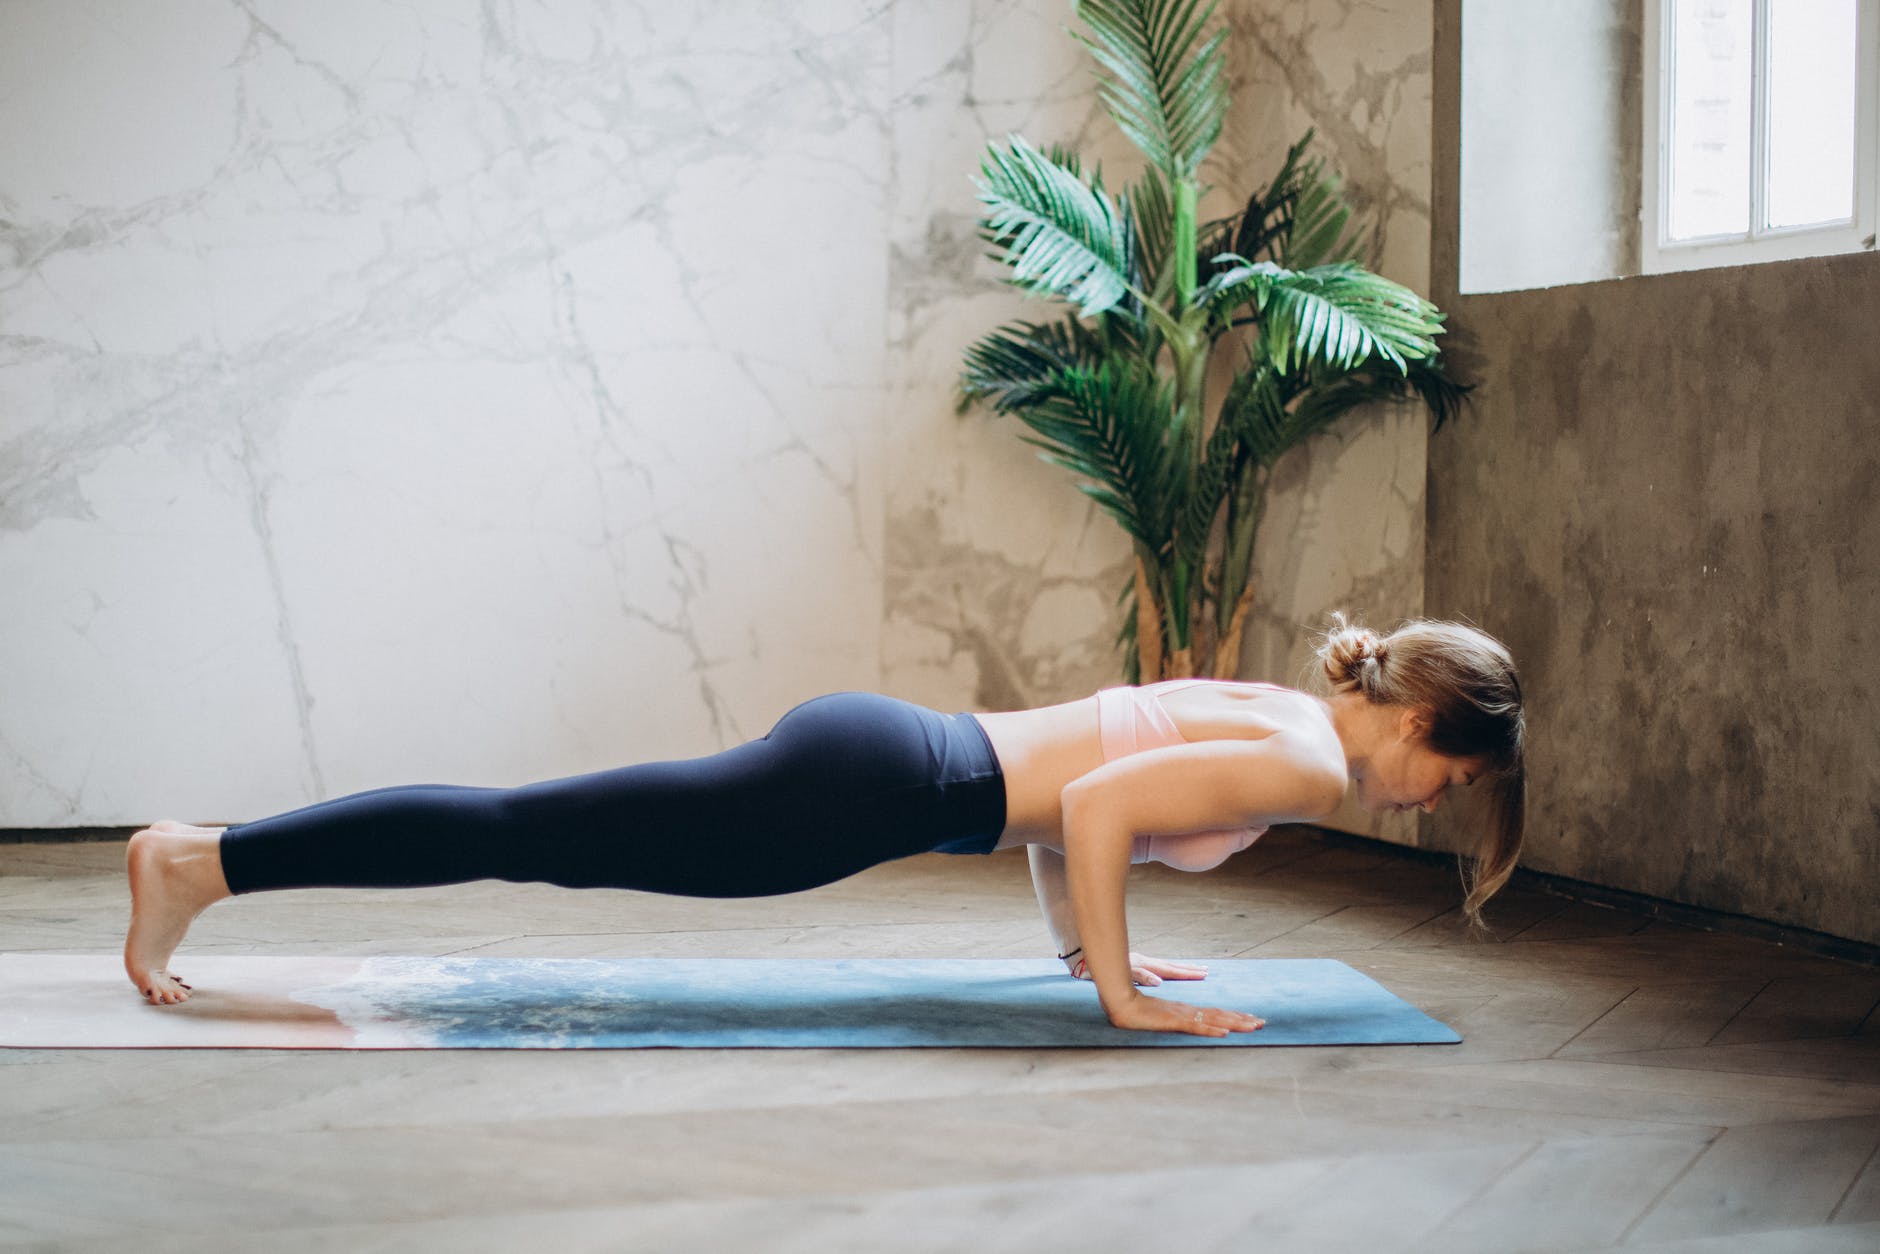 Thay vì cứ dùng điện thoại, bạn hãy tập yoga để việc sử dụng thời gian trở nên có ích hơn